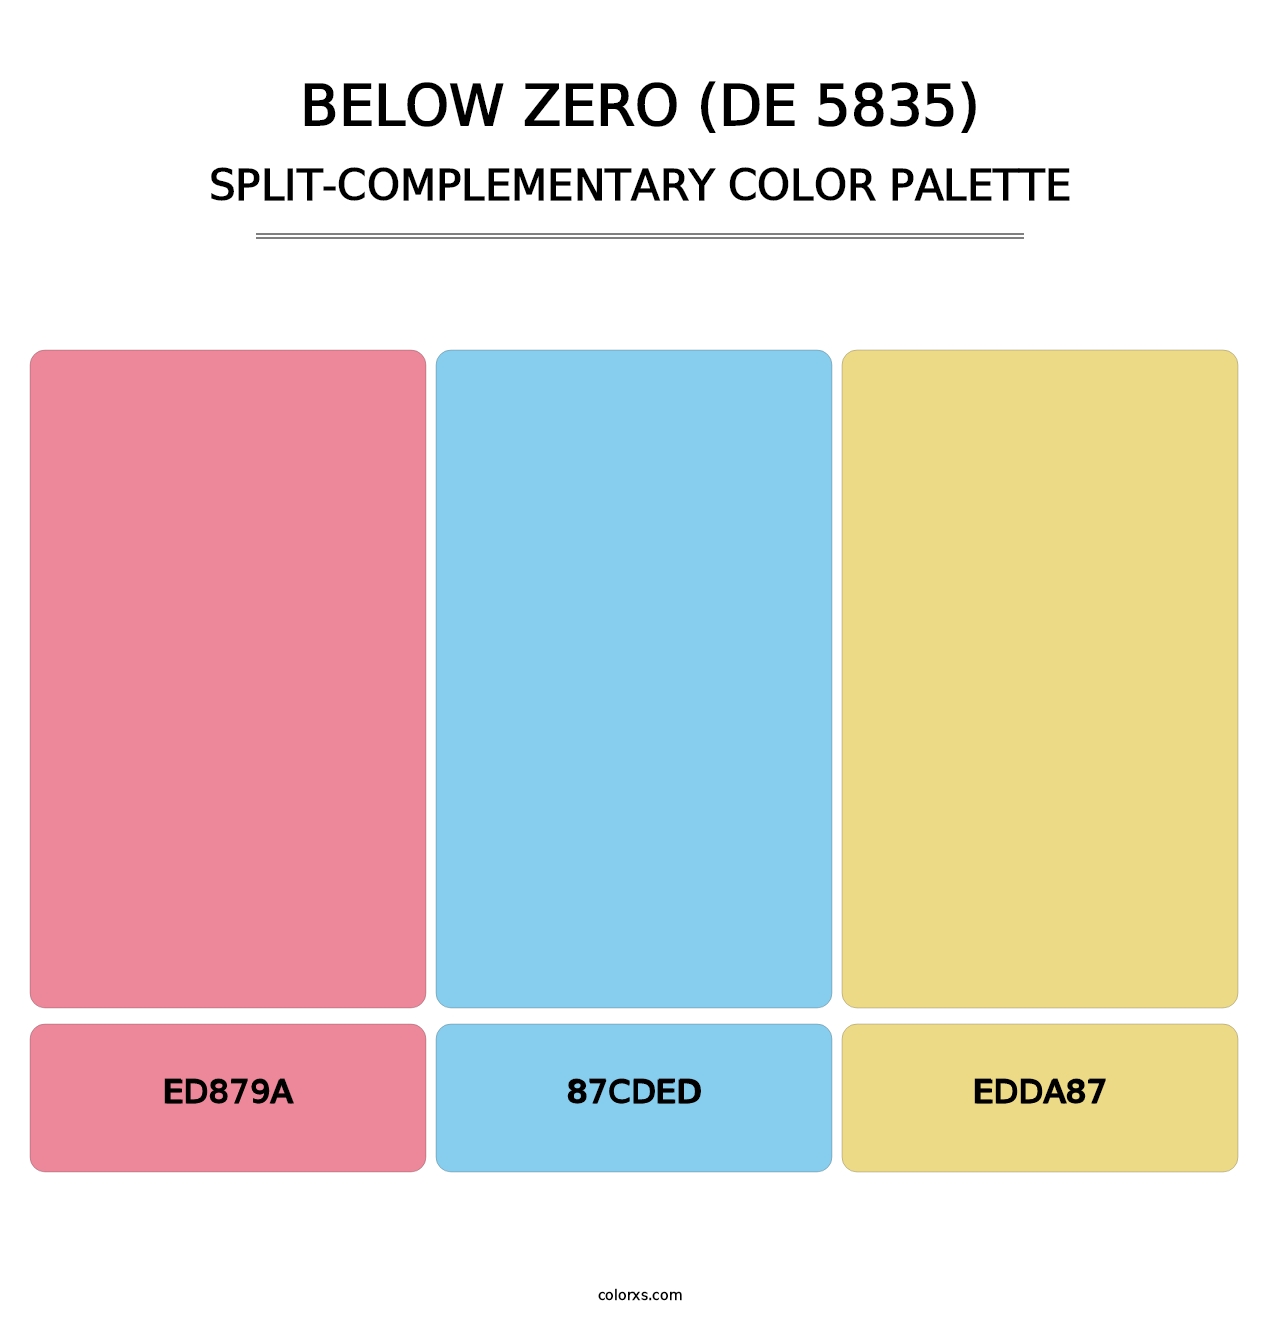 Below Zero (DE 5835) - Split-Complementary Color Palette